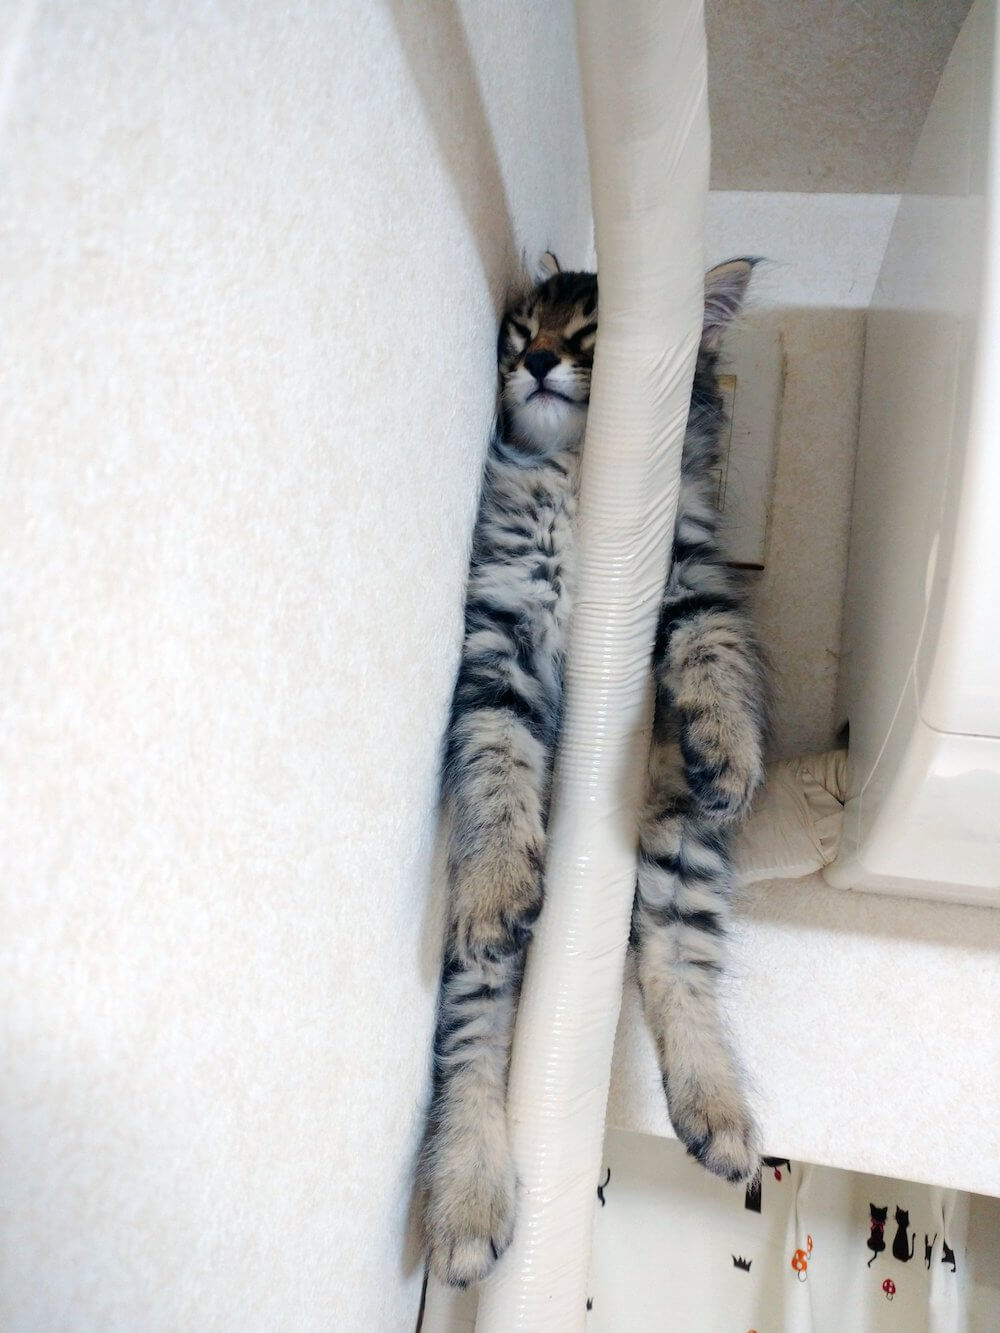 エアコンの配管の上に座ったまま寝ている猫の写真